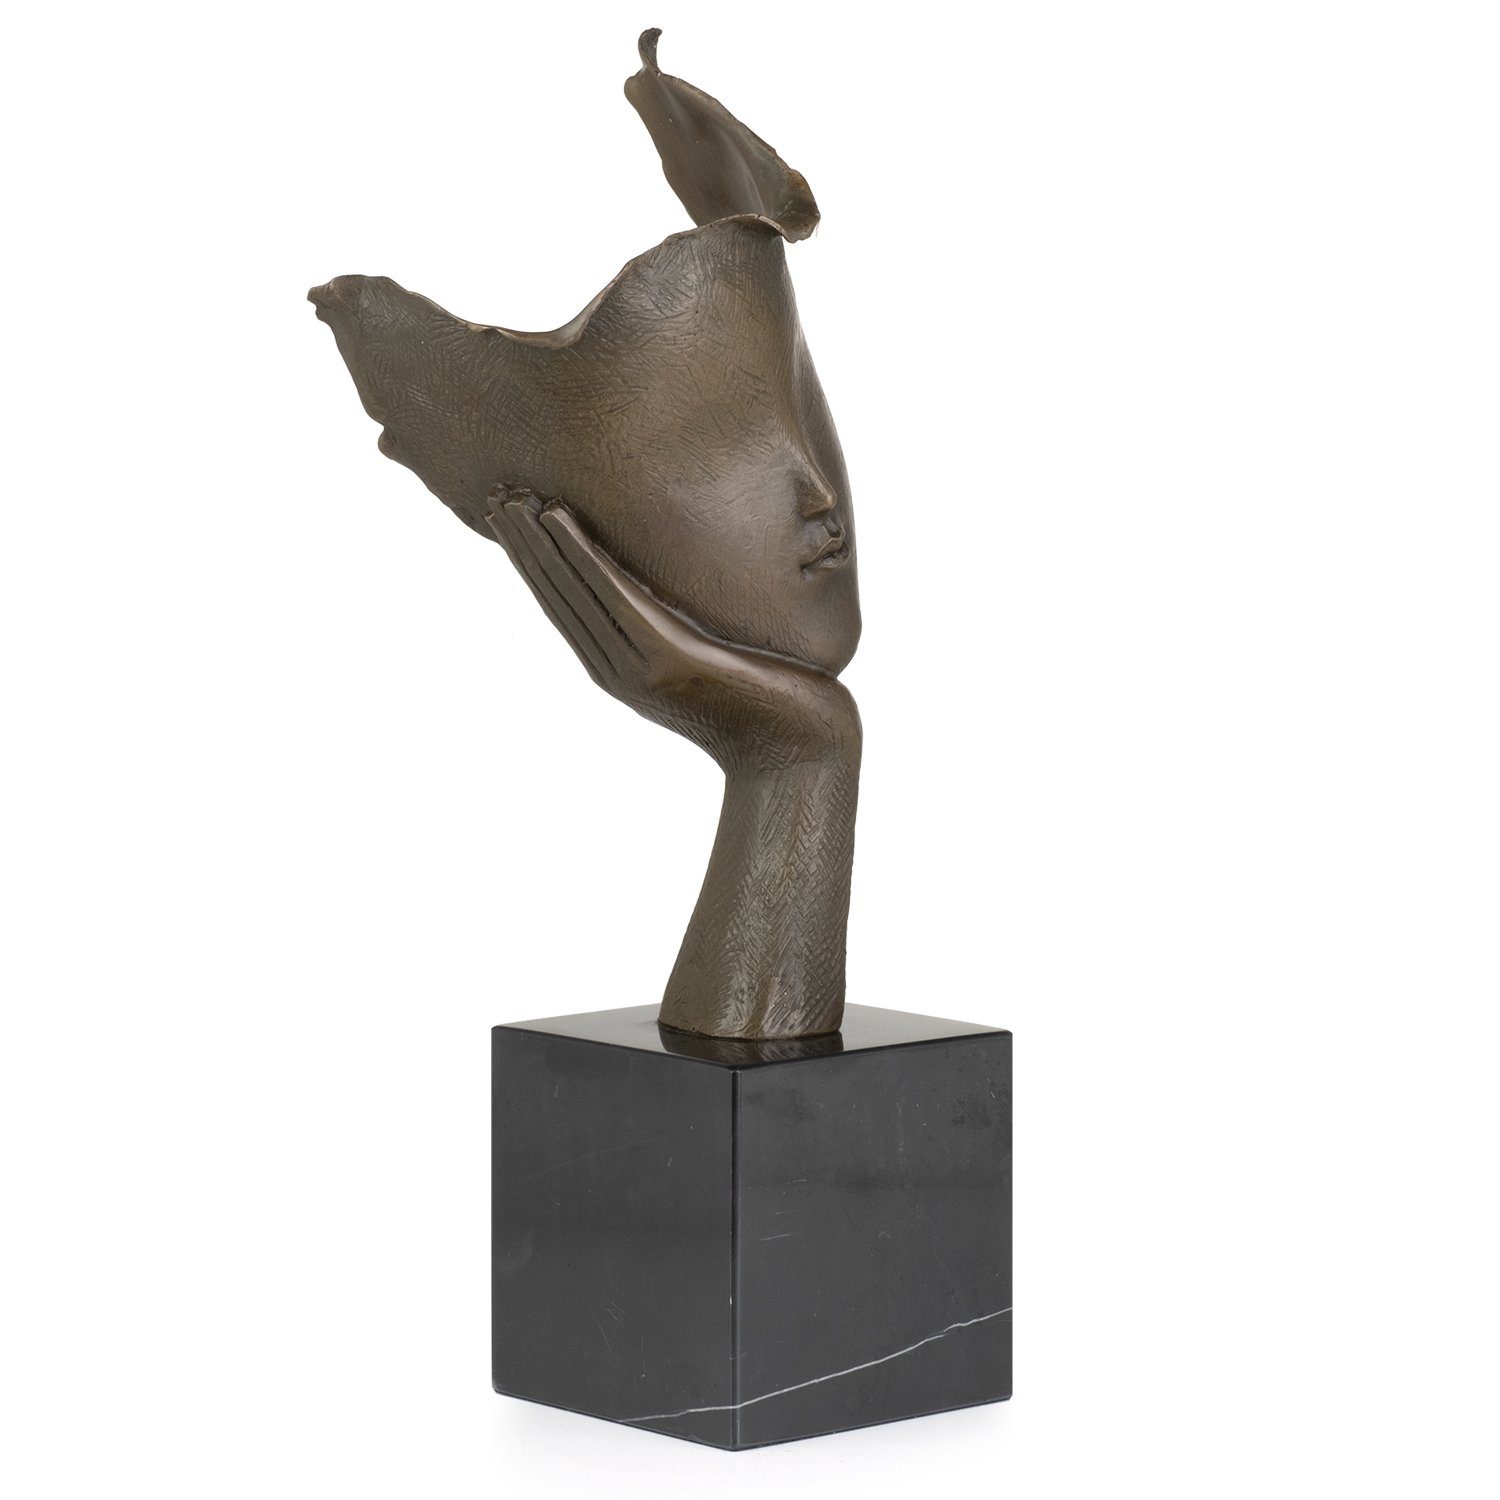 Moritz Skulptur Bronzefigur Abstraktes Figuren Statue Skulpturen Gesicht nachdenklich, Antik-Stil